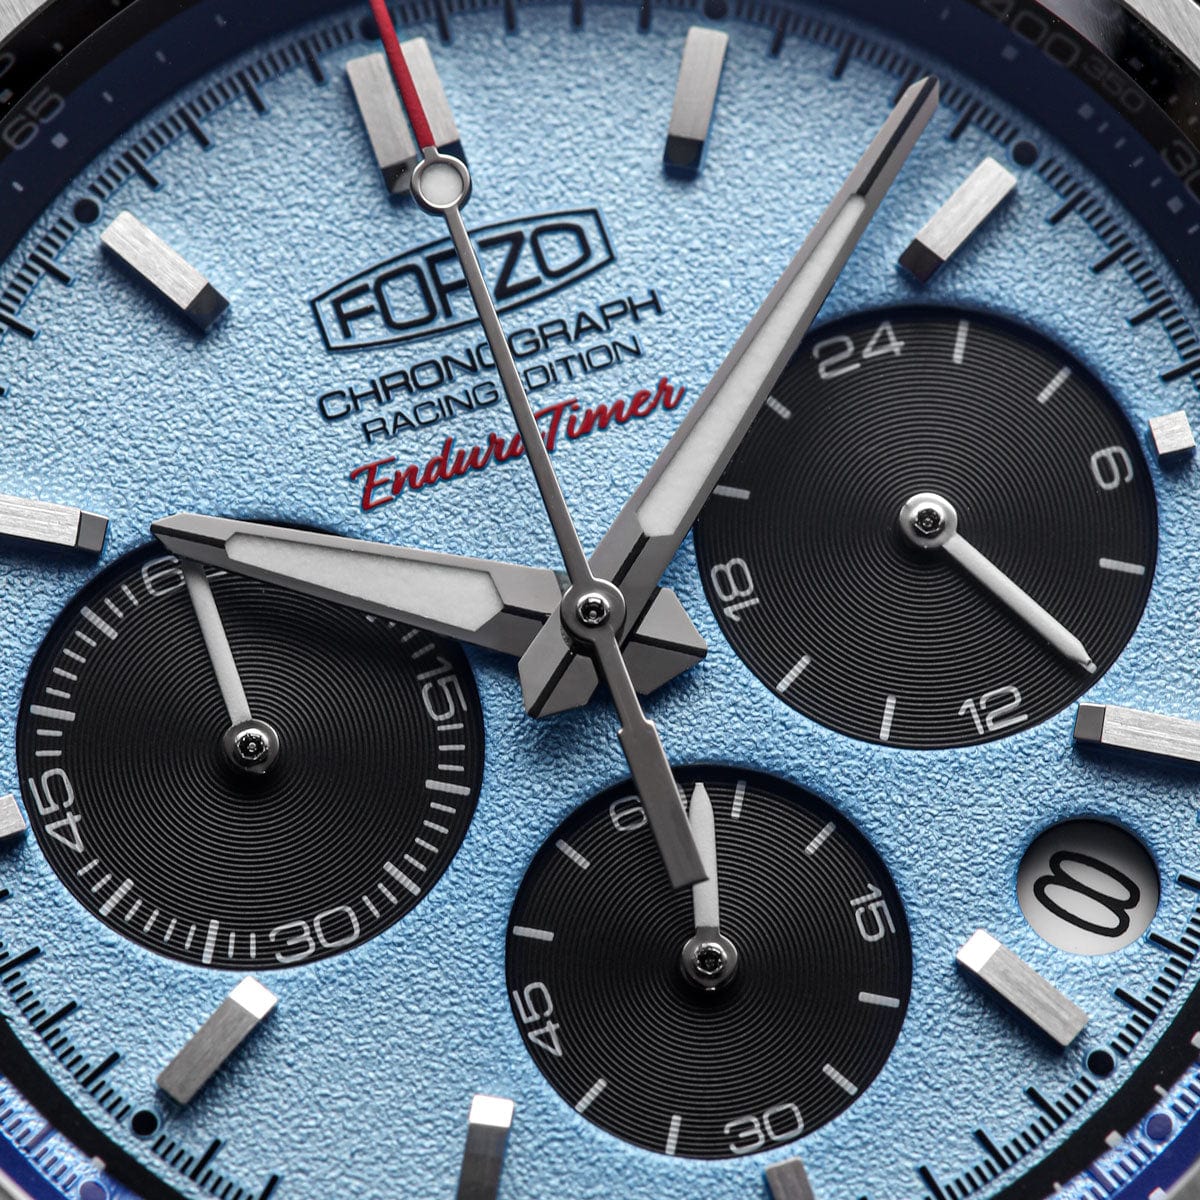 FORZO G2 EnduraTimer Chronograph Watch - Light Blue Dial - SS-B01-B -  Geckota